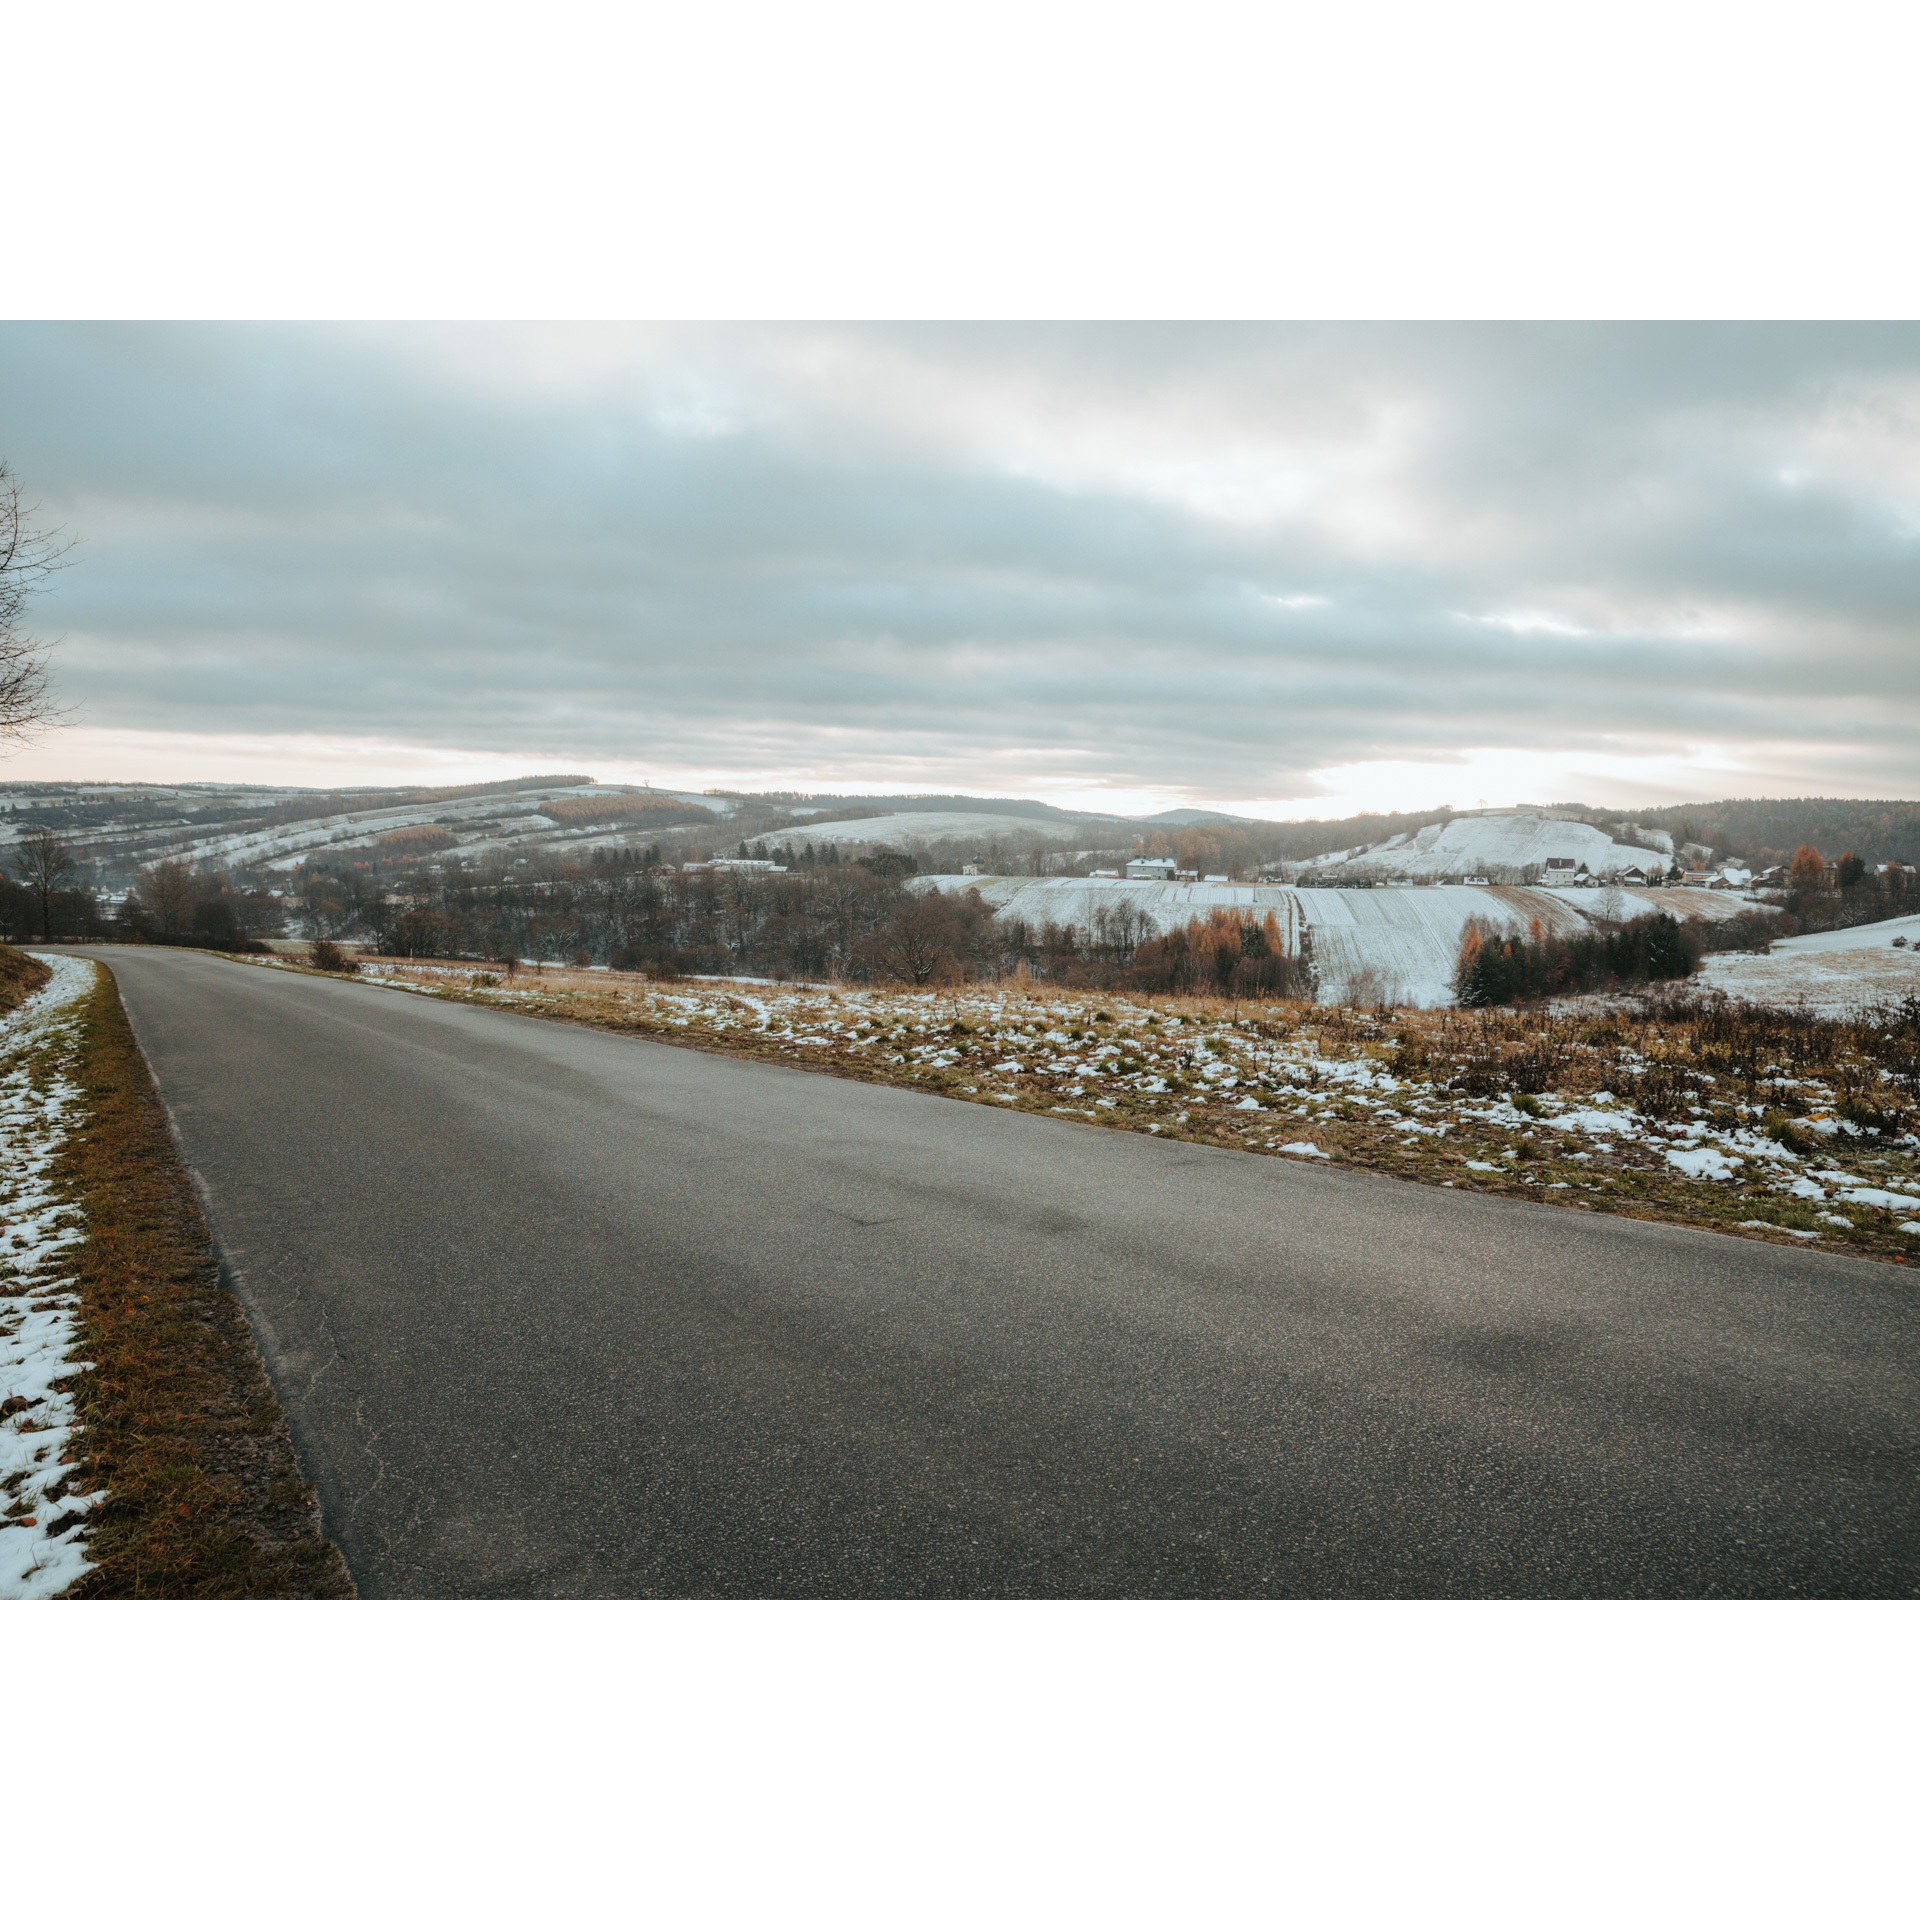 Asfaltowa droga z widokiem na lekko zaśnieżone pagurki i drzewa bez liści oraz zachmurzone niebo